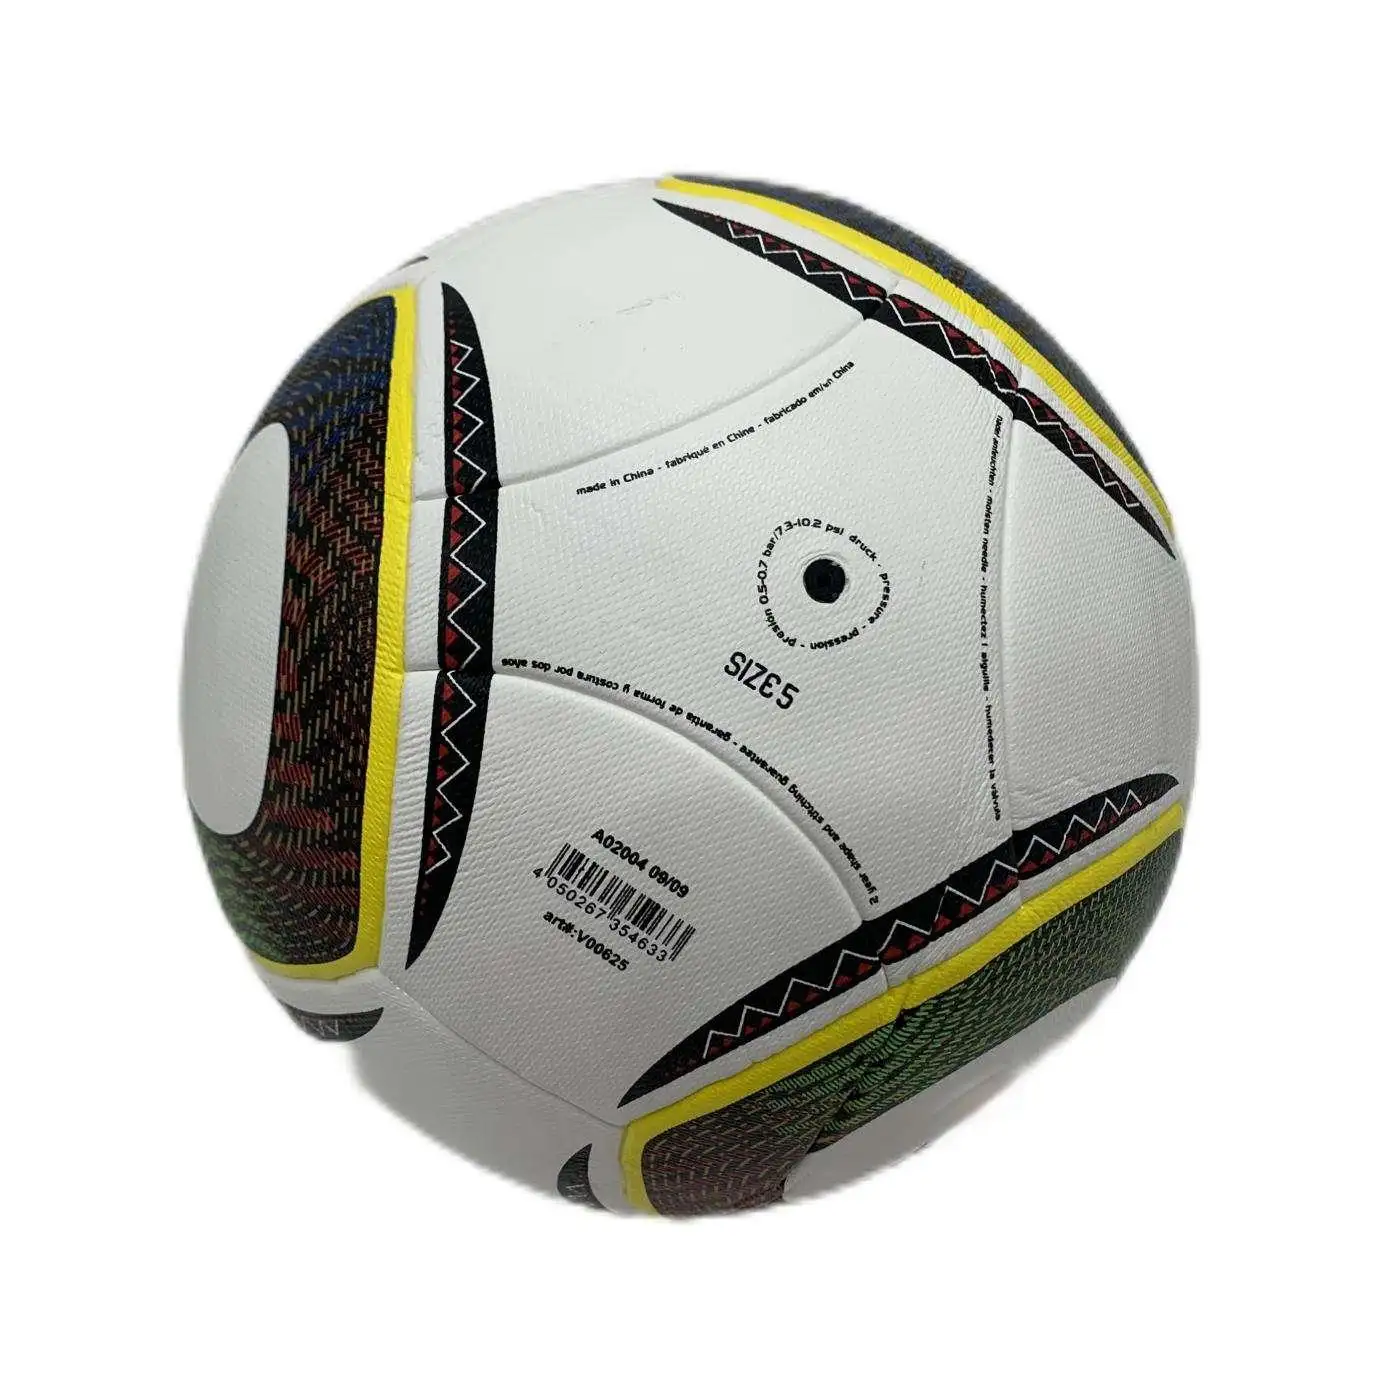 2010 दक्षिण अफ्रीका आधिकारिक फुटबॉल बॉल्स पु सामग्री प्रक्रिया उच्च गुणवत्ता पेशेवर लीग सॉकर बॉल्स